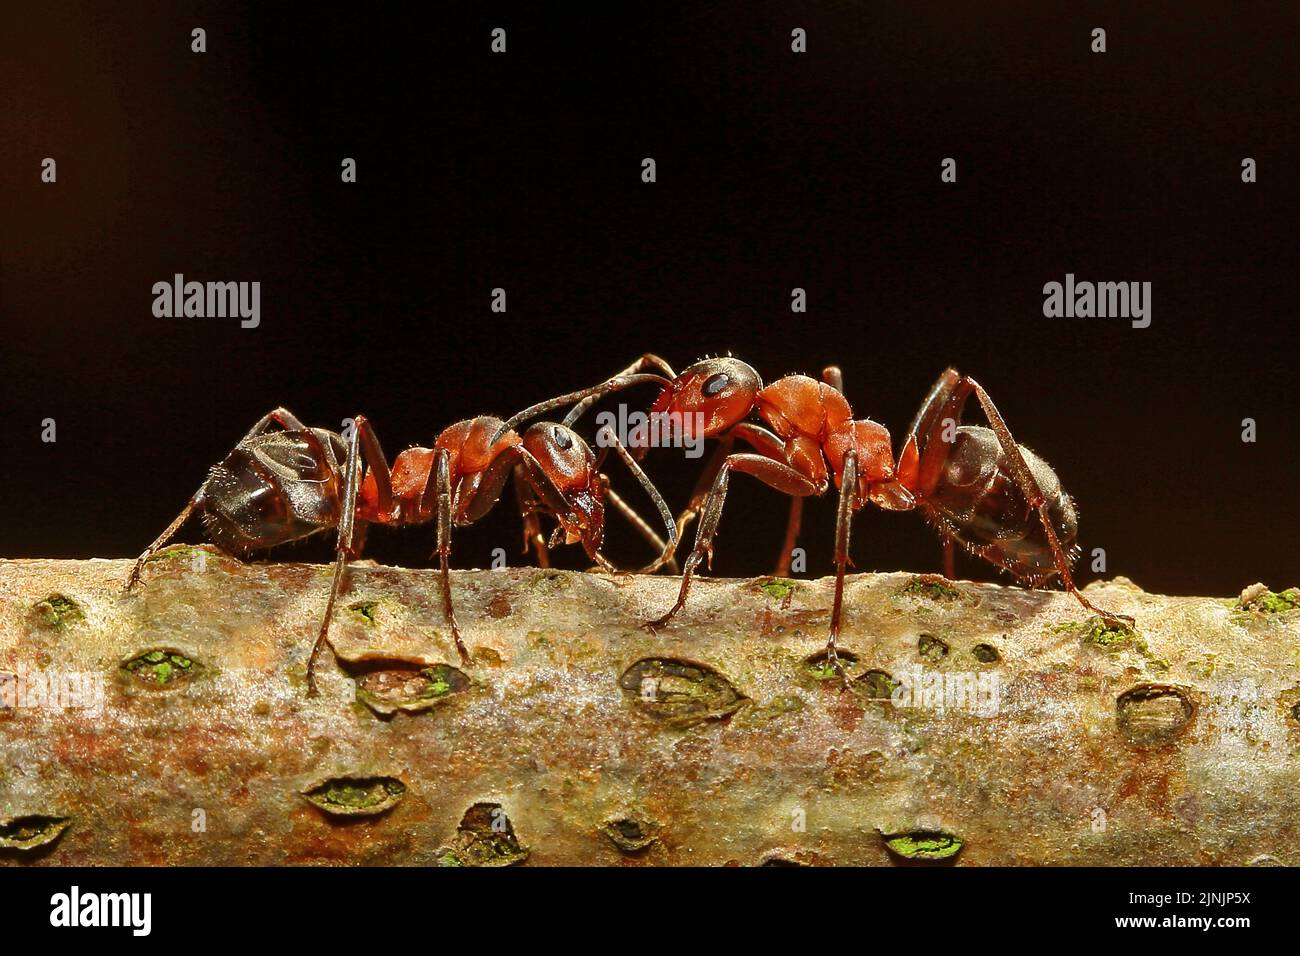 Hormiga de madera (F. rufa oder F. polyctena), dos hormigas en ramita, Alemania Foto de stock